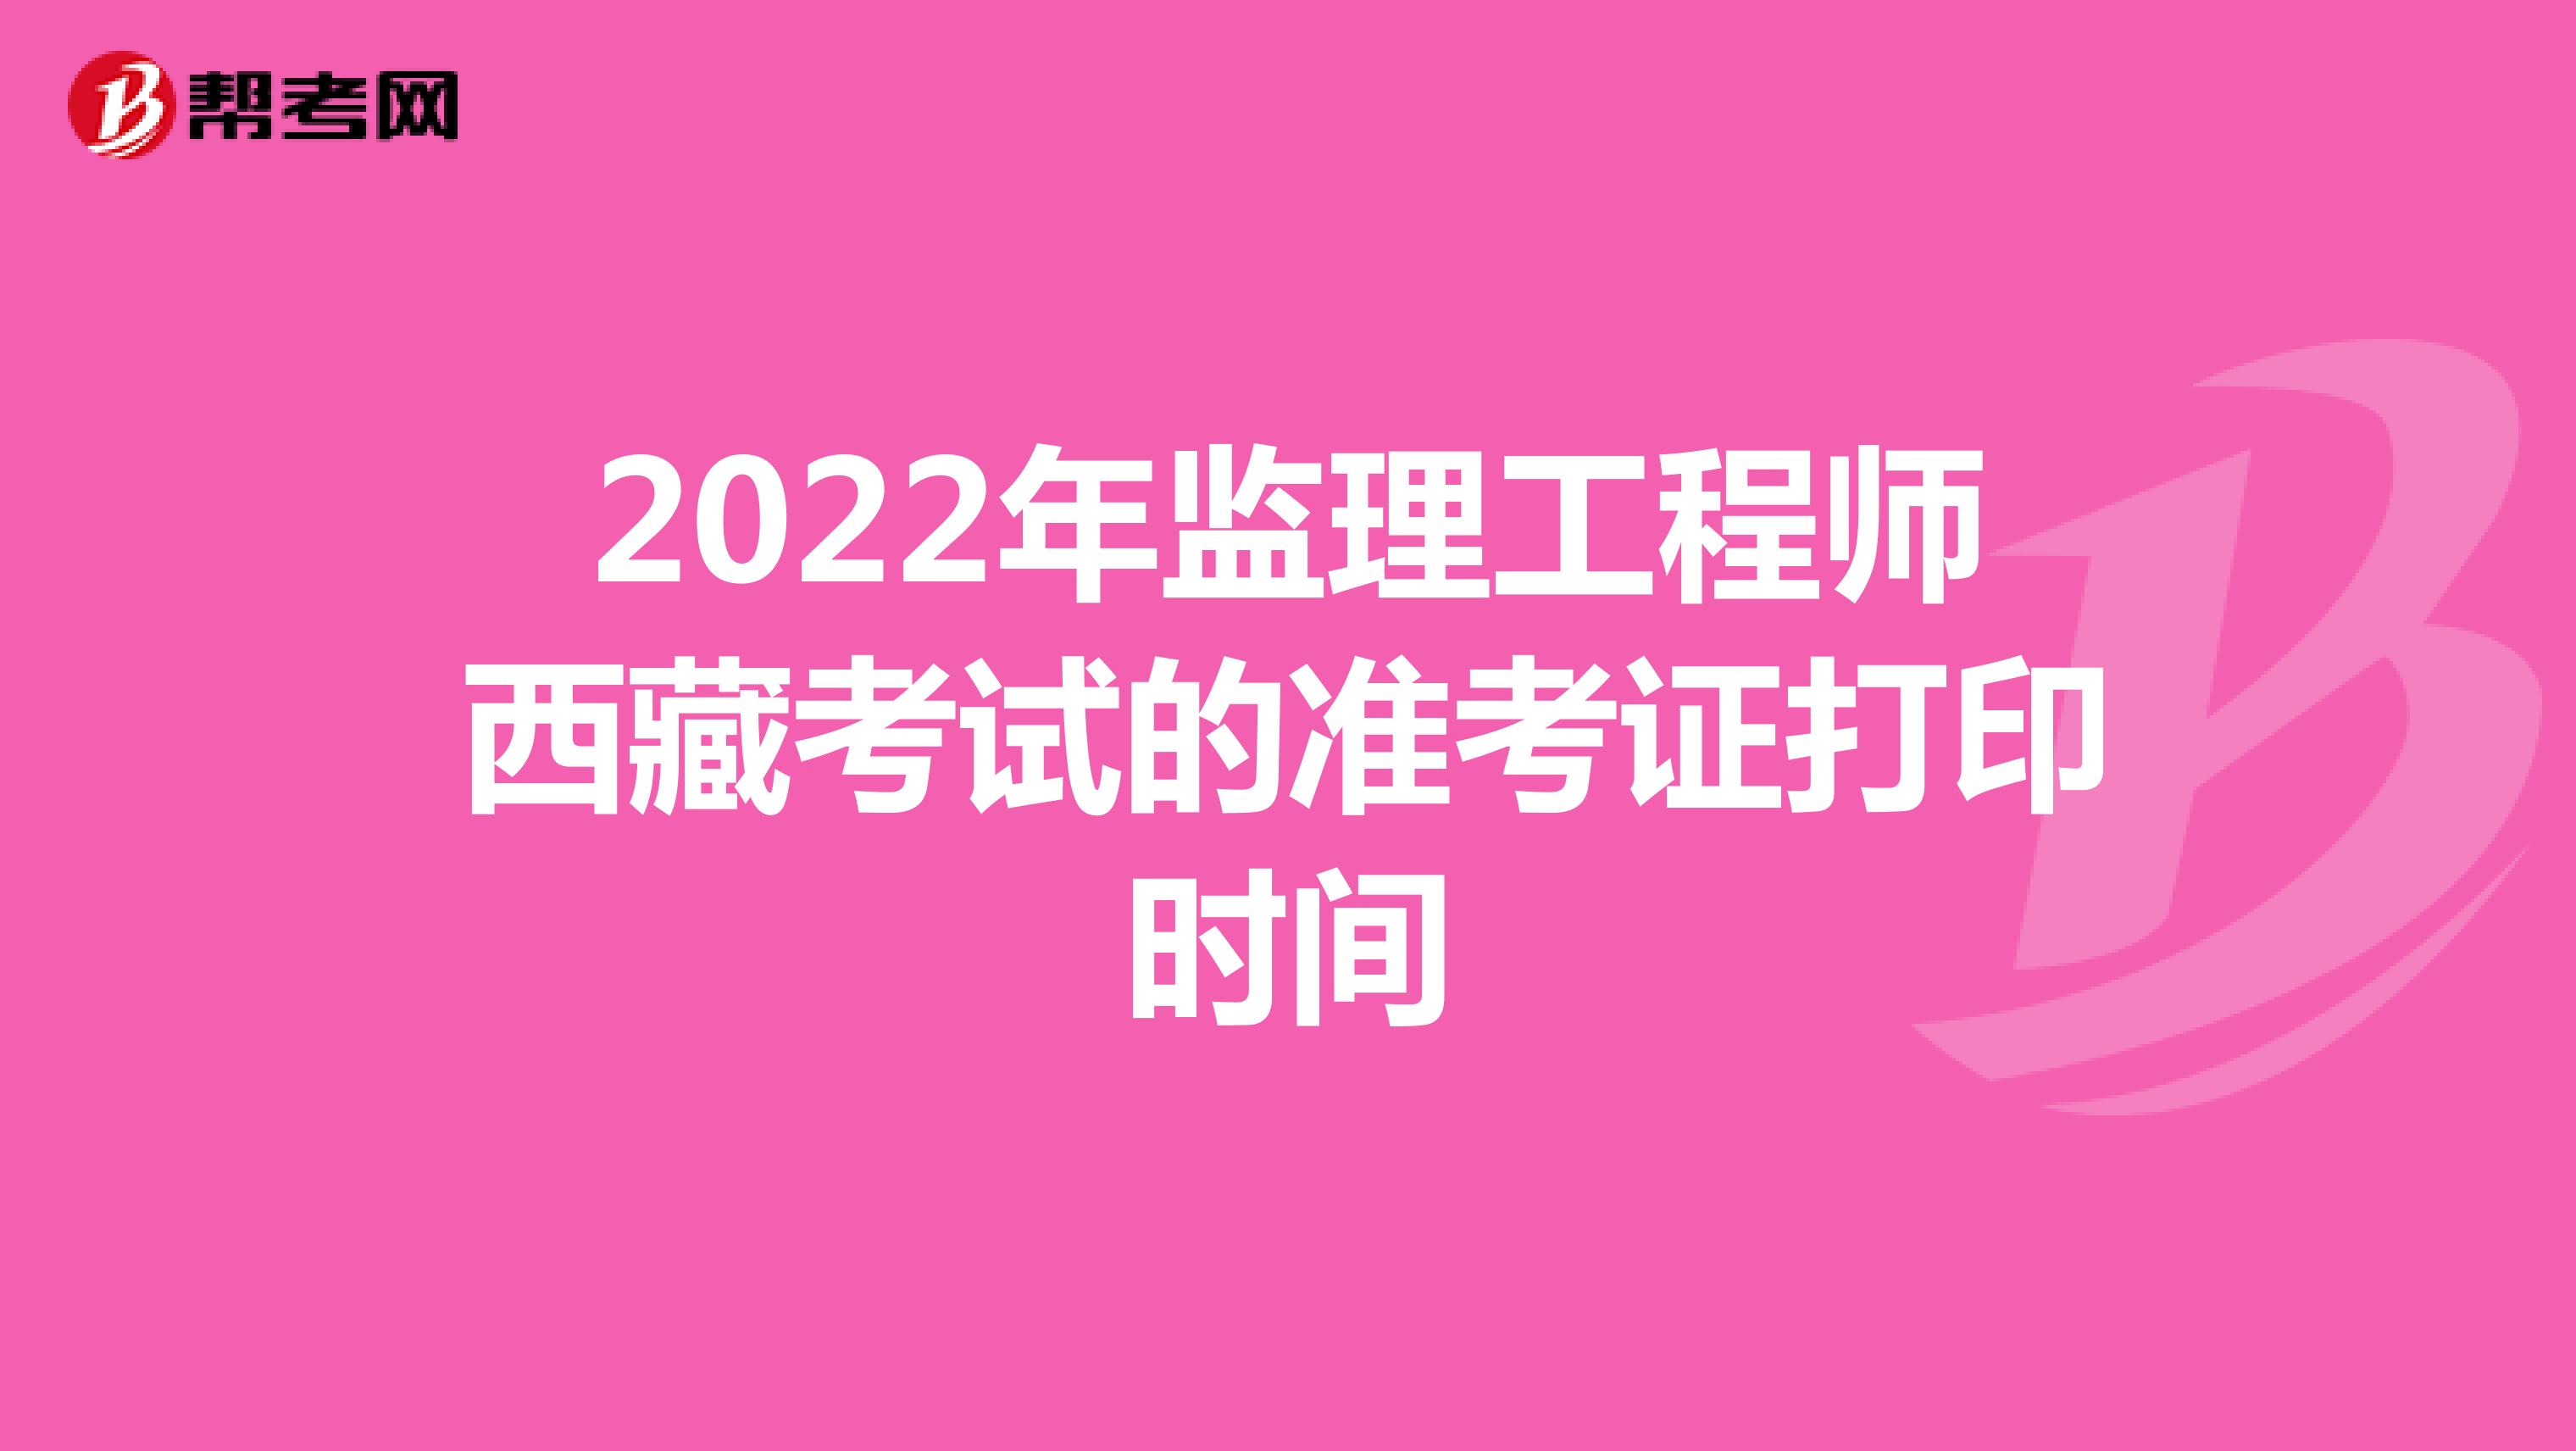 2022年监理工程师西藏考试的准考证打印时间